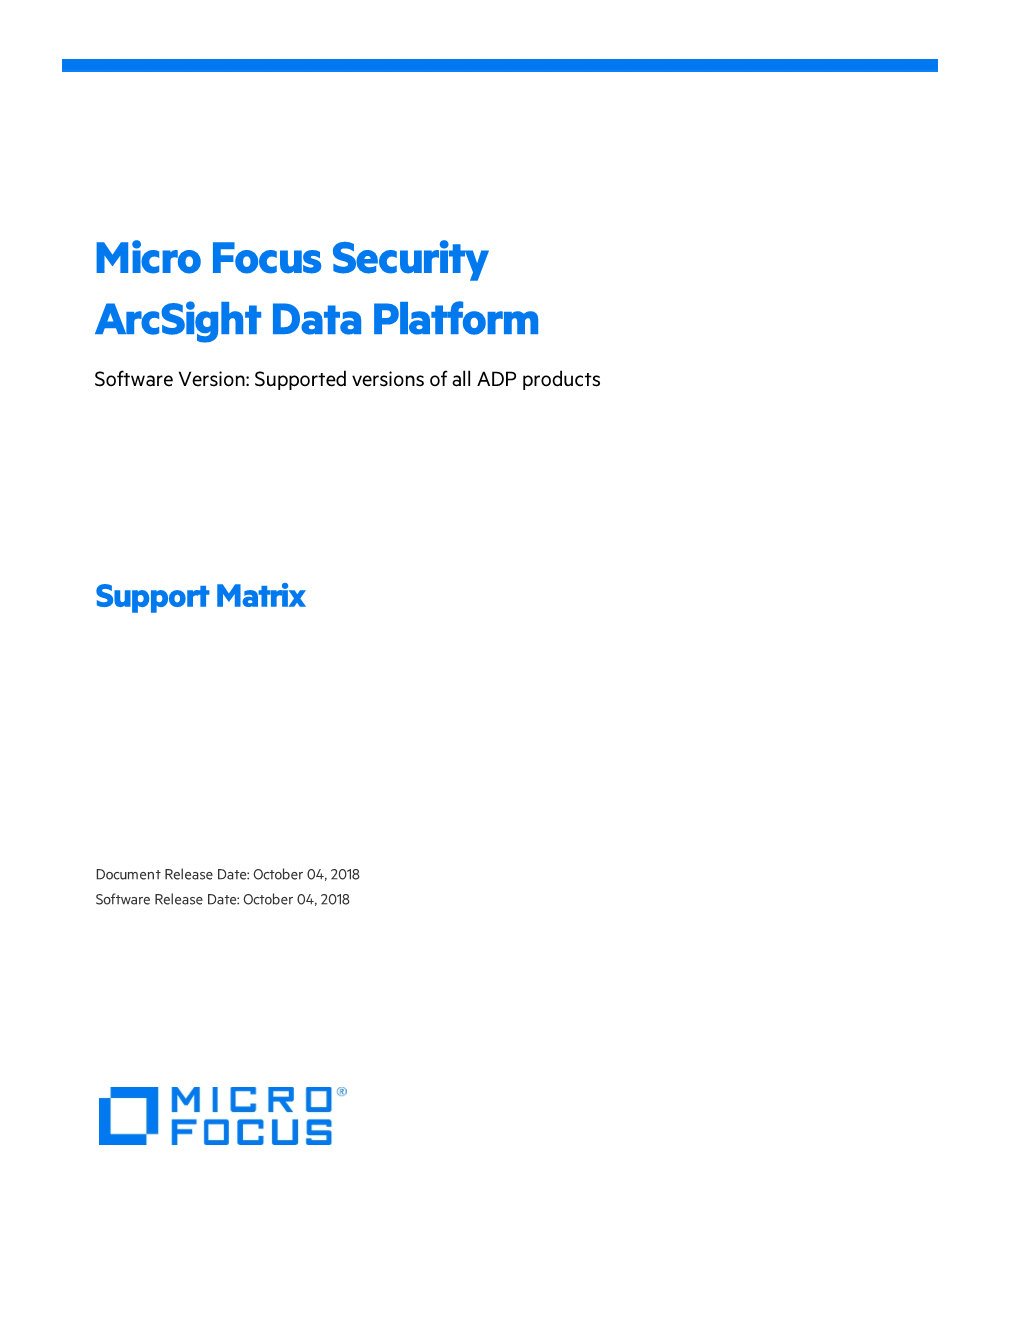 Micro Focus Arcsight ADP Support Matrix